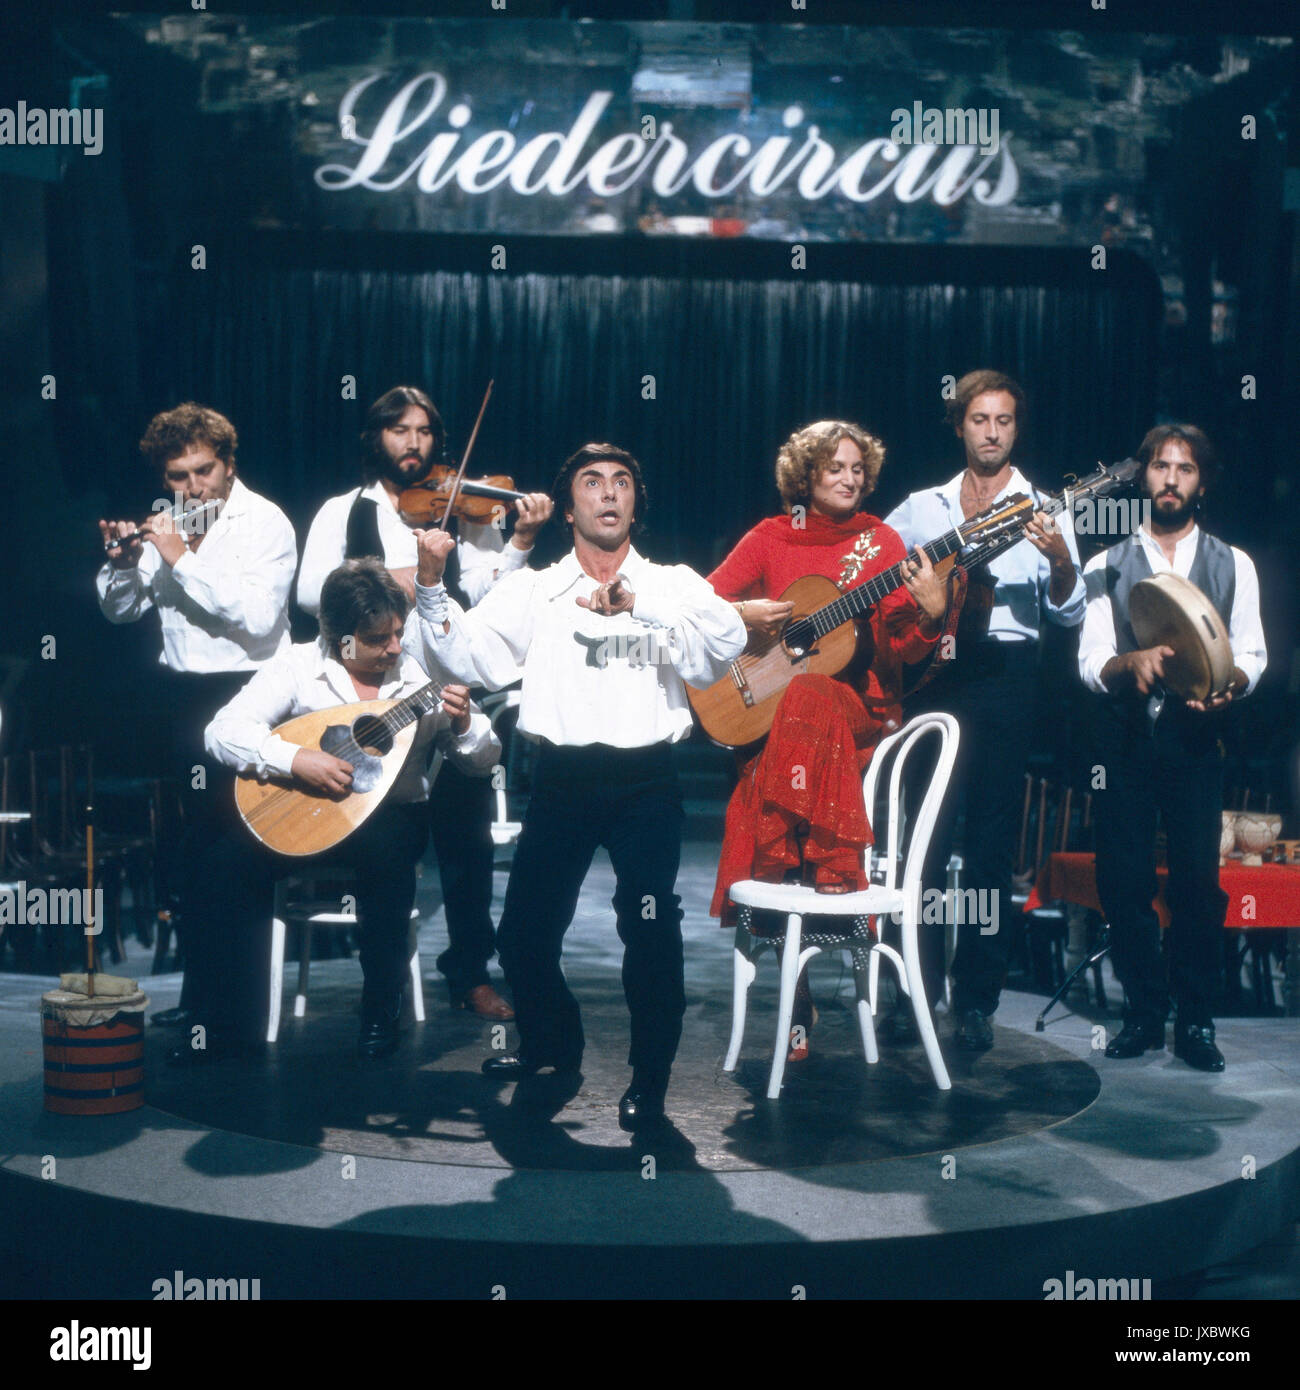 Die neapolitanische Gruppe N.C.C.P. zu Gast im 'Liedercircus', Deutschland 1980er Jahre. Neapolitan band N.C.C.P. performing at the show 'Liedercircus', Germany 1980s. Stock Photo